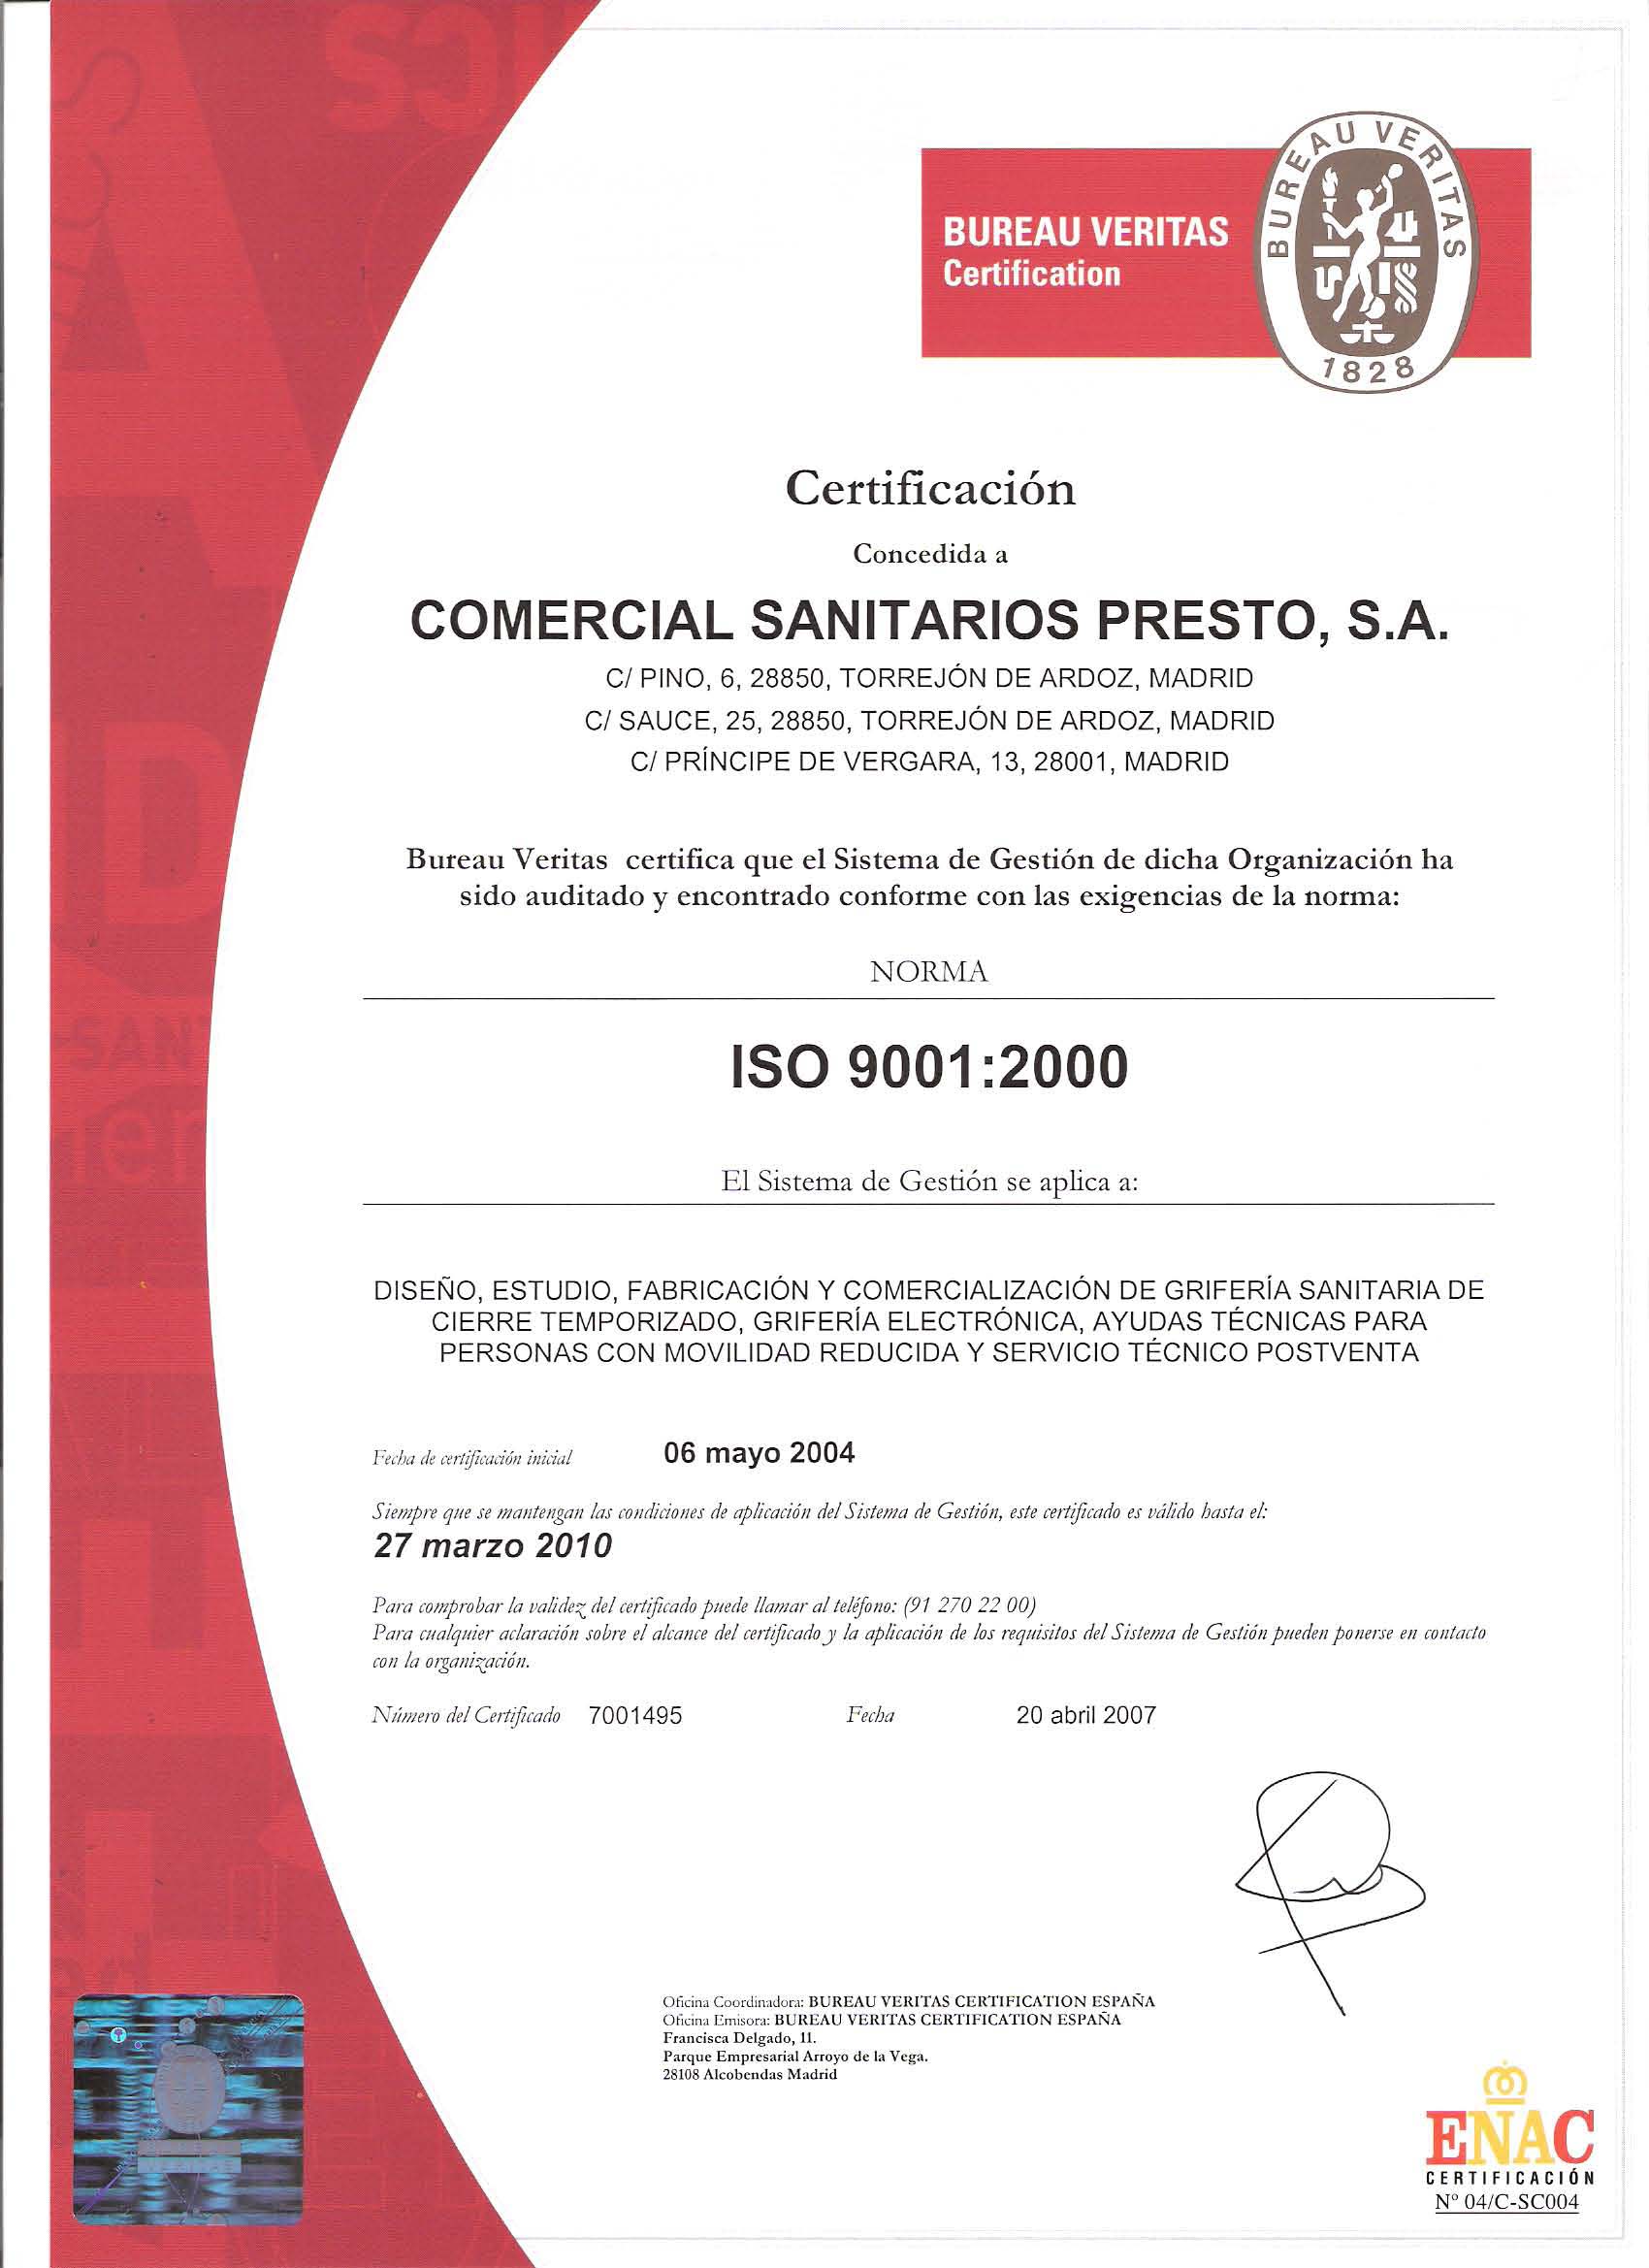 COMERCIAL SANITARIOS PRESTO RENUEVA SU CERTIFICACIÓN ISO 9001:2000